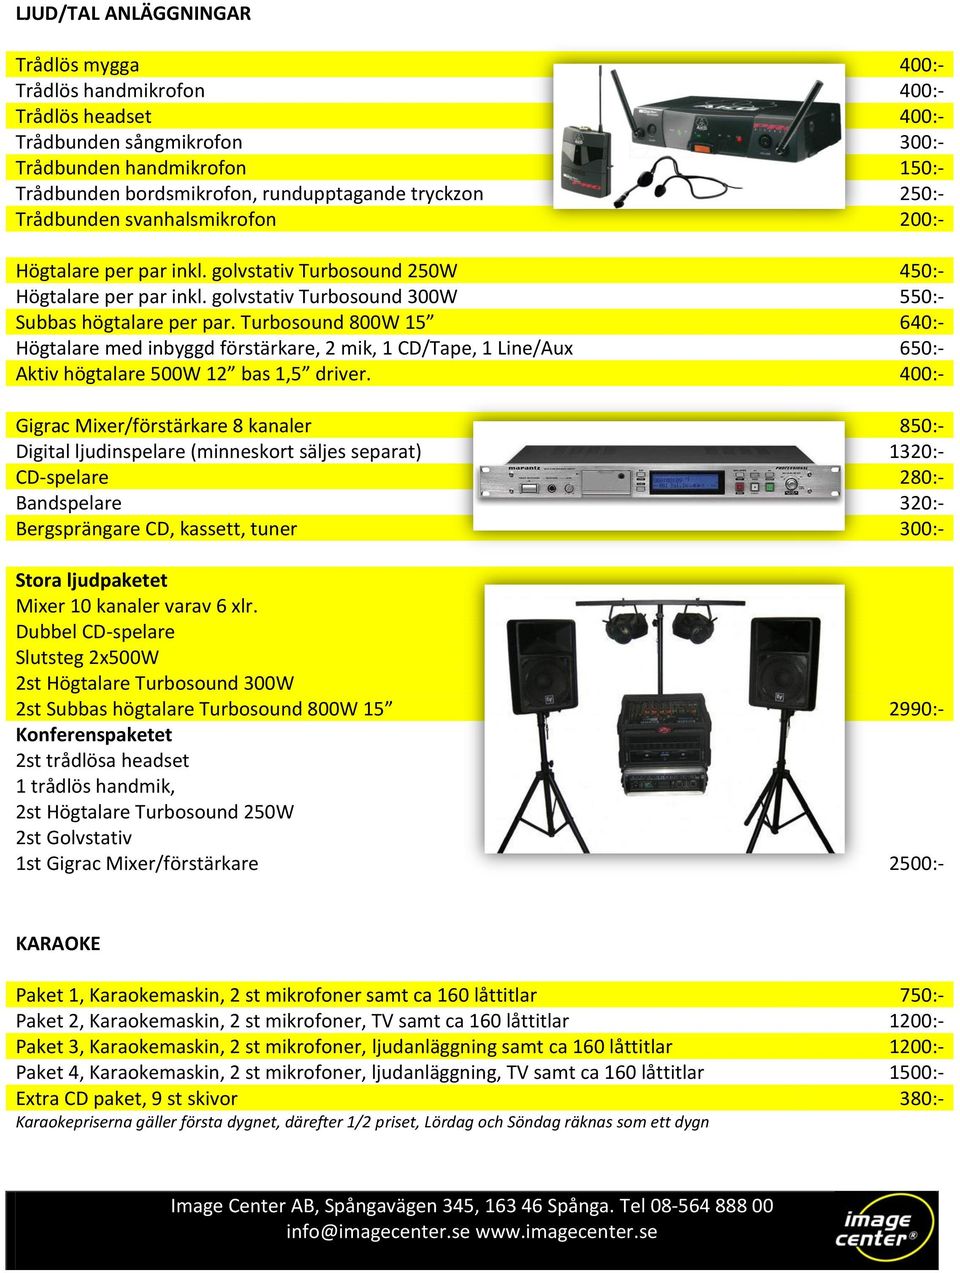 Turbosound 800W 15 640:- Högtalare med inbyggd förstärkare, 2 mik, 1 CD/Tape, 1 Line/Aux 650:- Aktiv högtalare 500W 12 bas 1,5 driver.